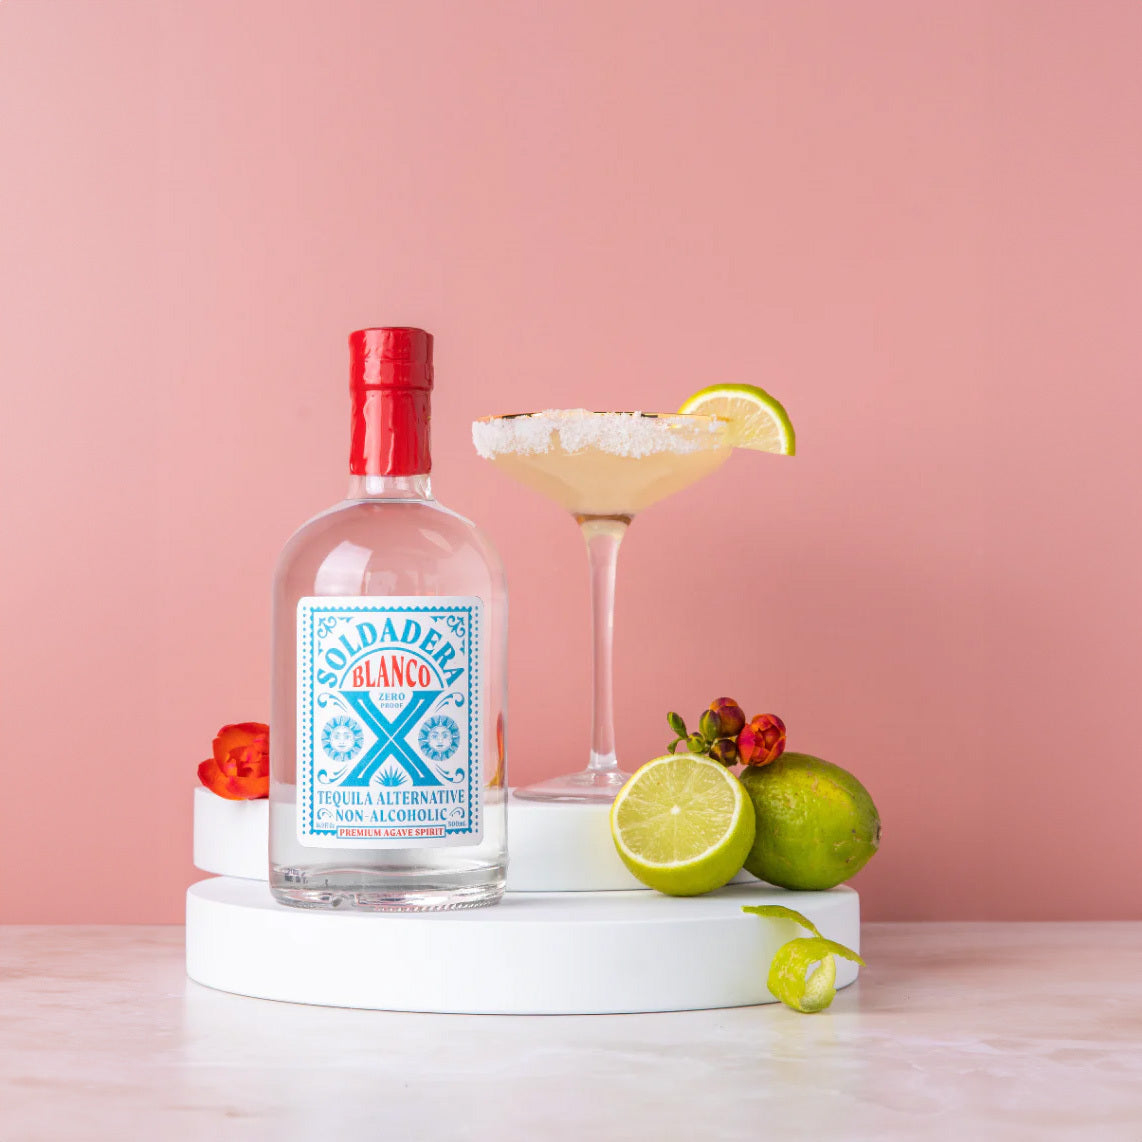 Soldadera Blanco - Non-Alcoholic White Tequila Alternative